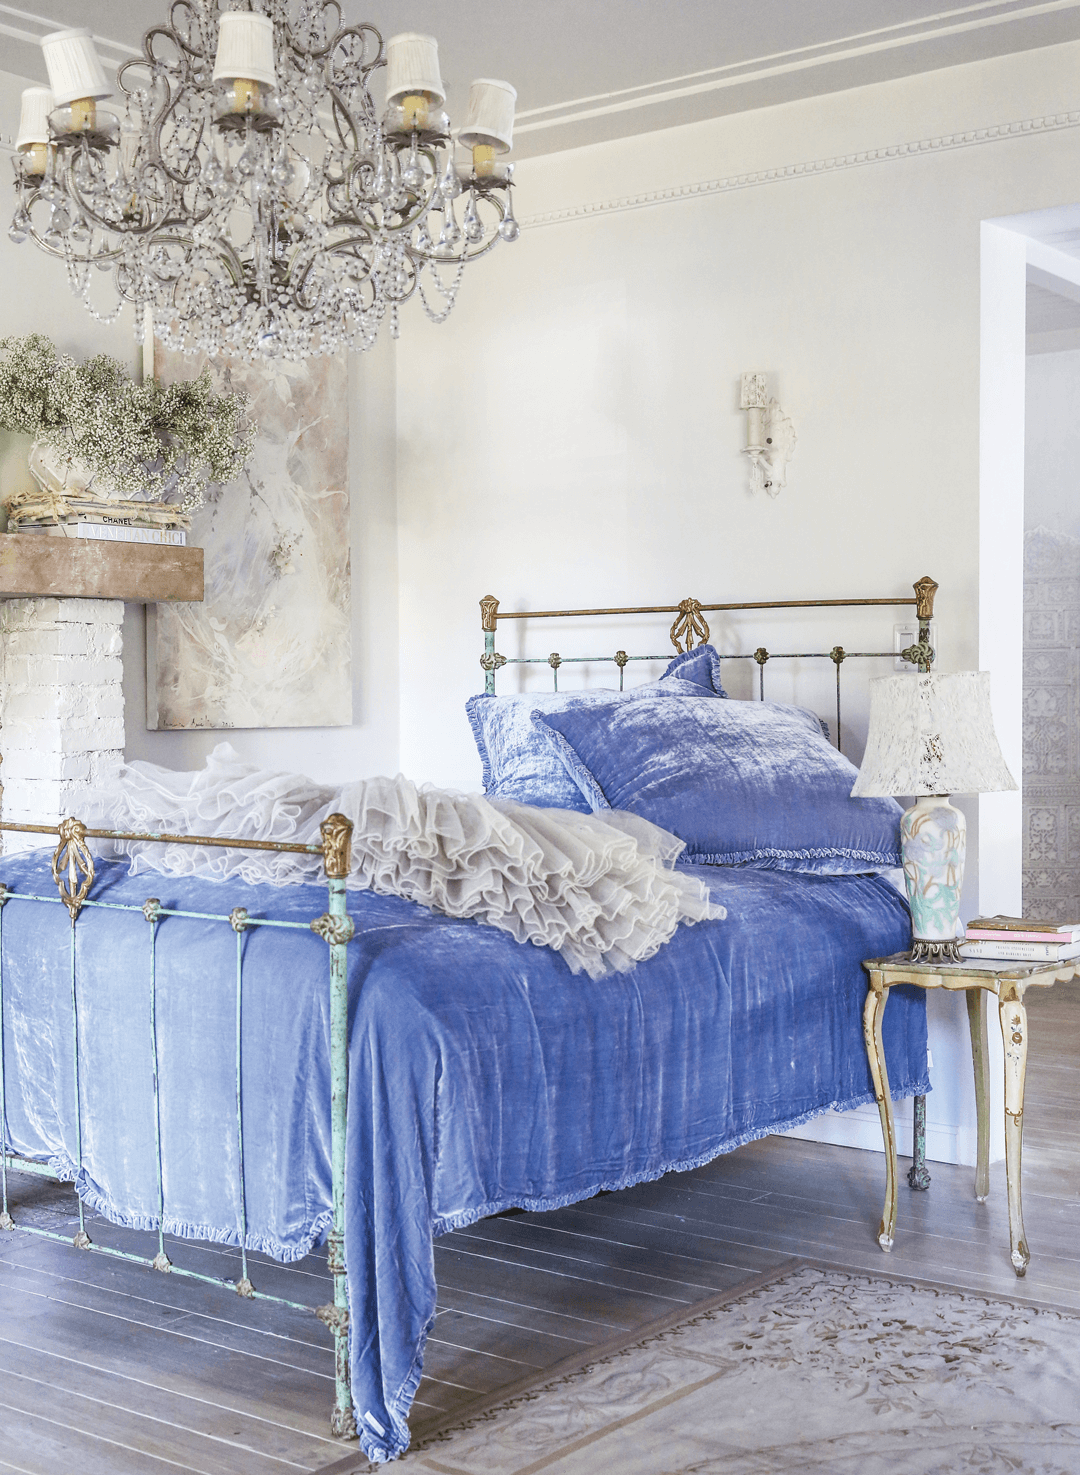 Shabby Chic bedroom decor with velvet bedding